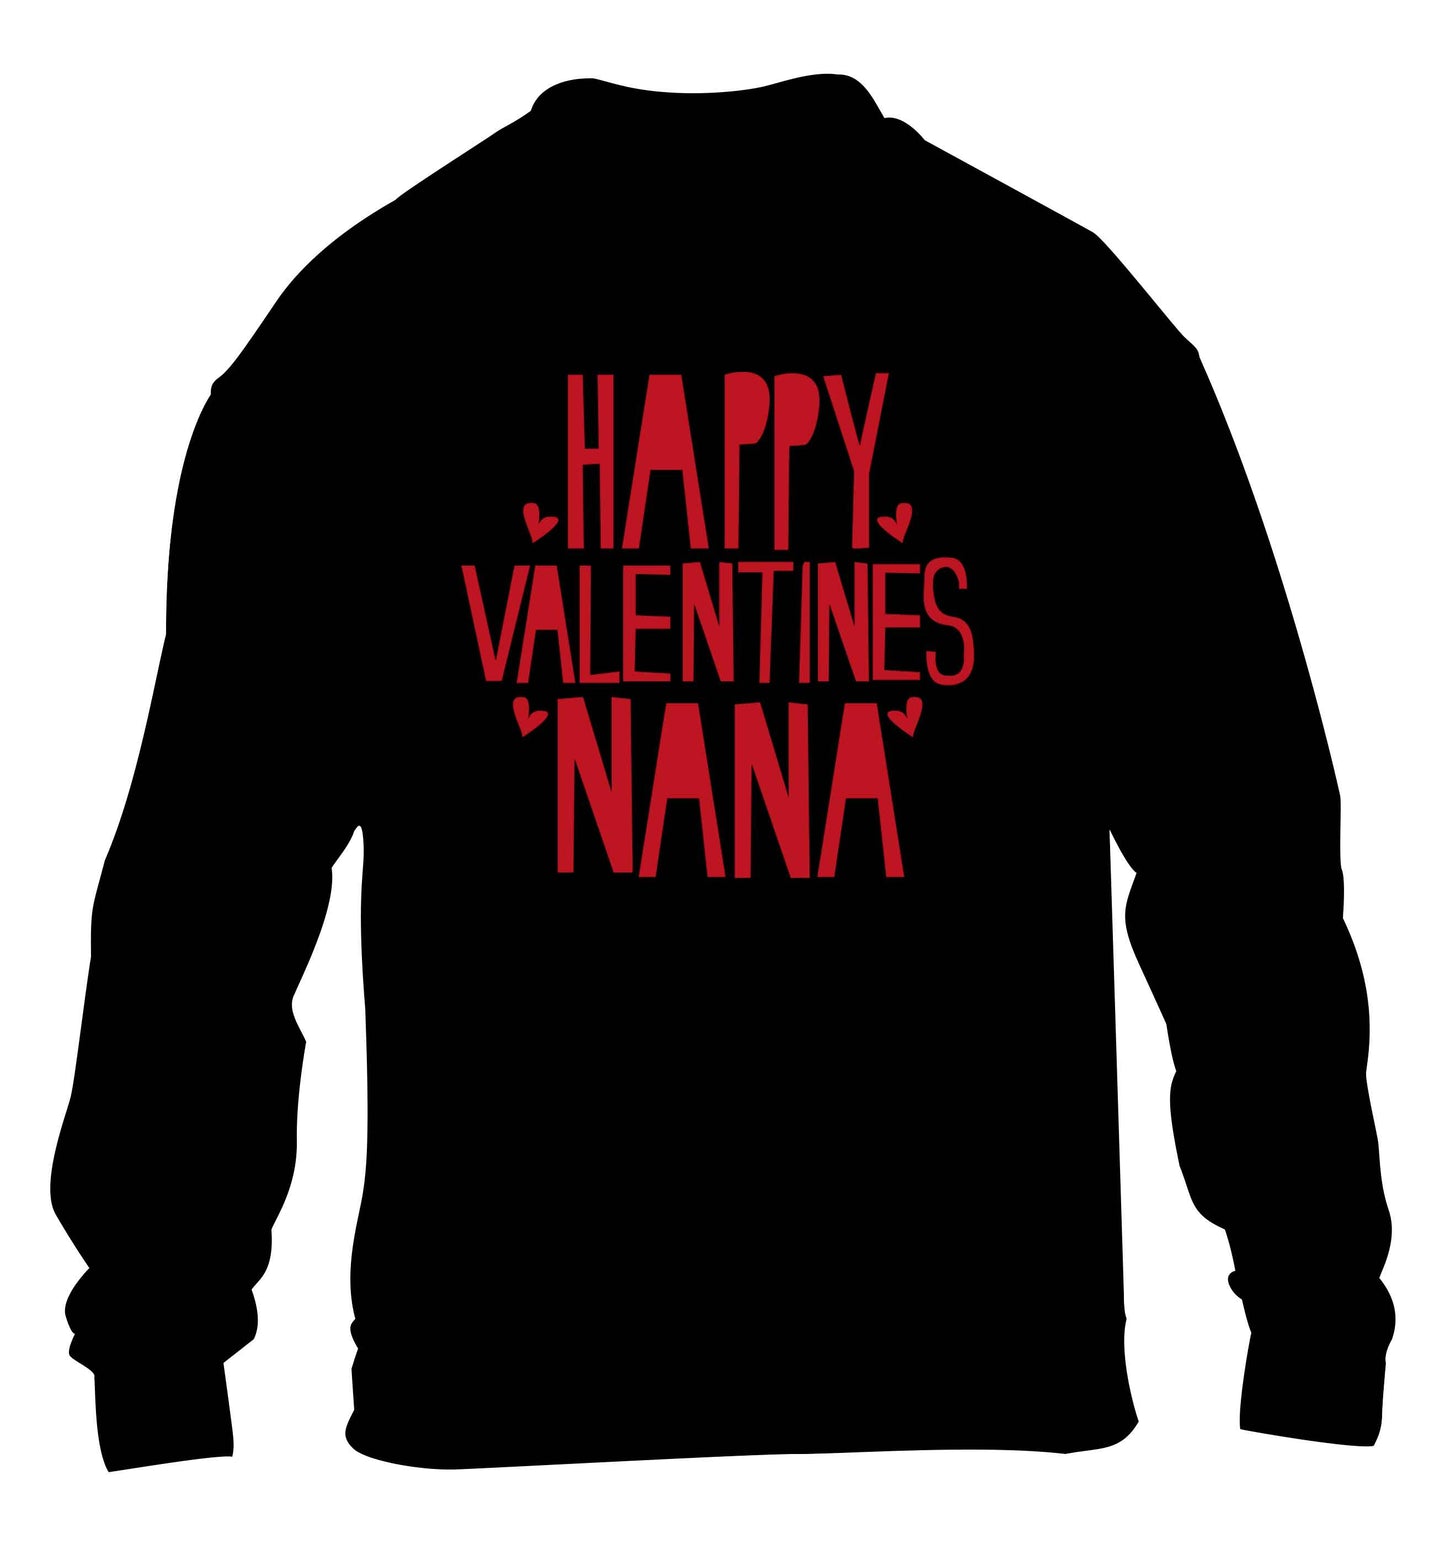 Happy valentines nana children's black sweater 12-13 Years